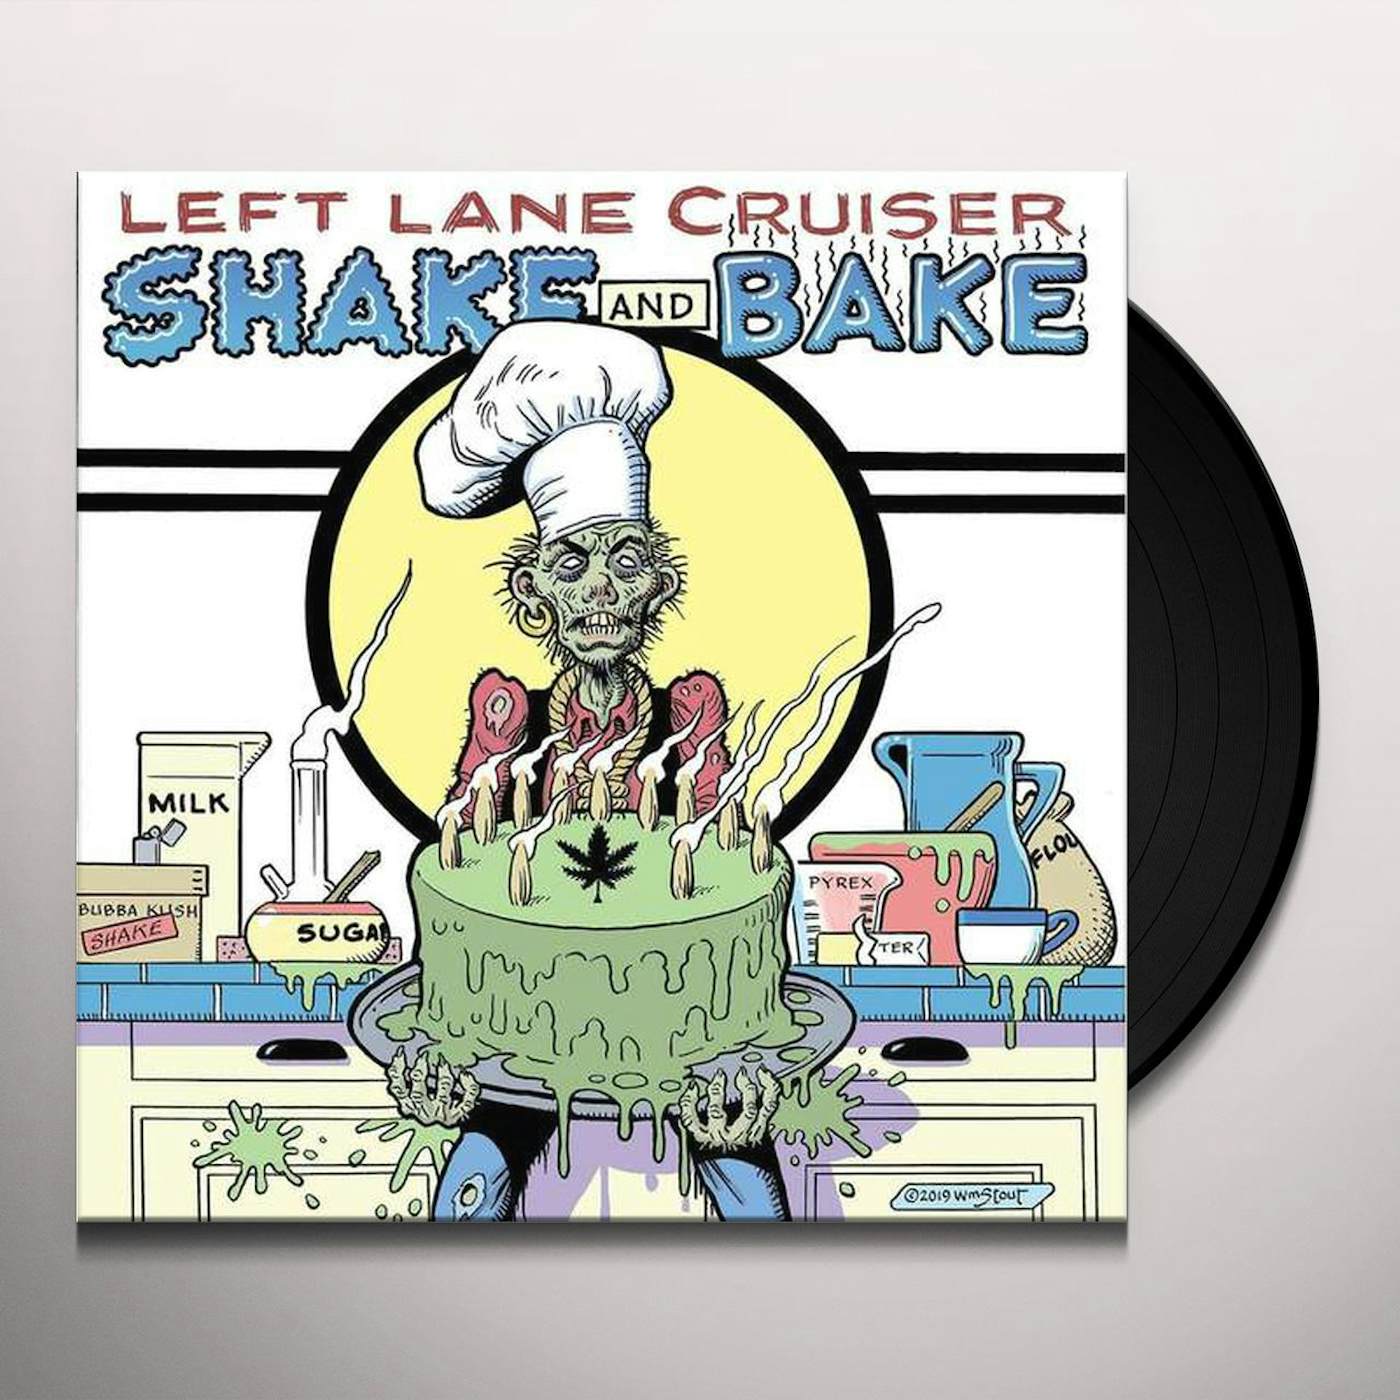 Left Lane Cruiser Shake and Bake Vinyl Record